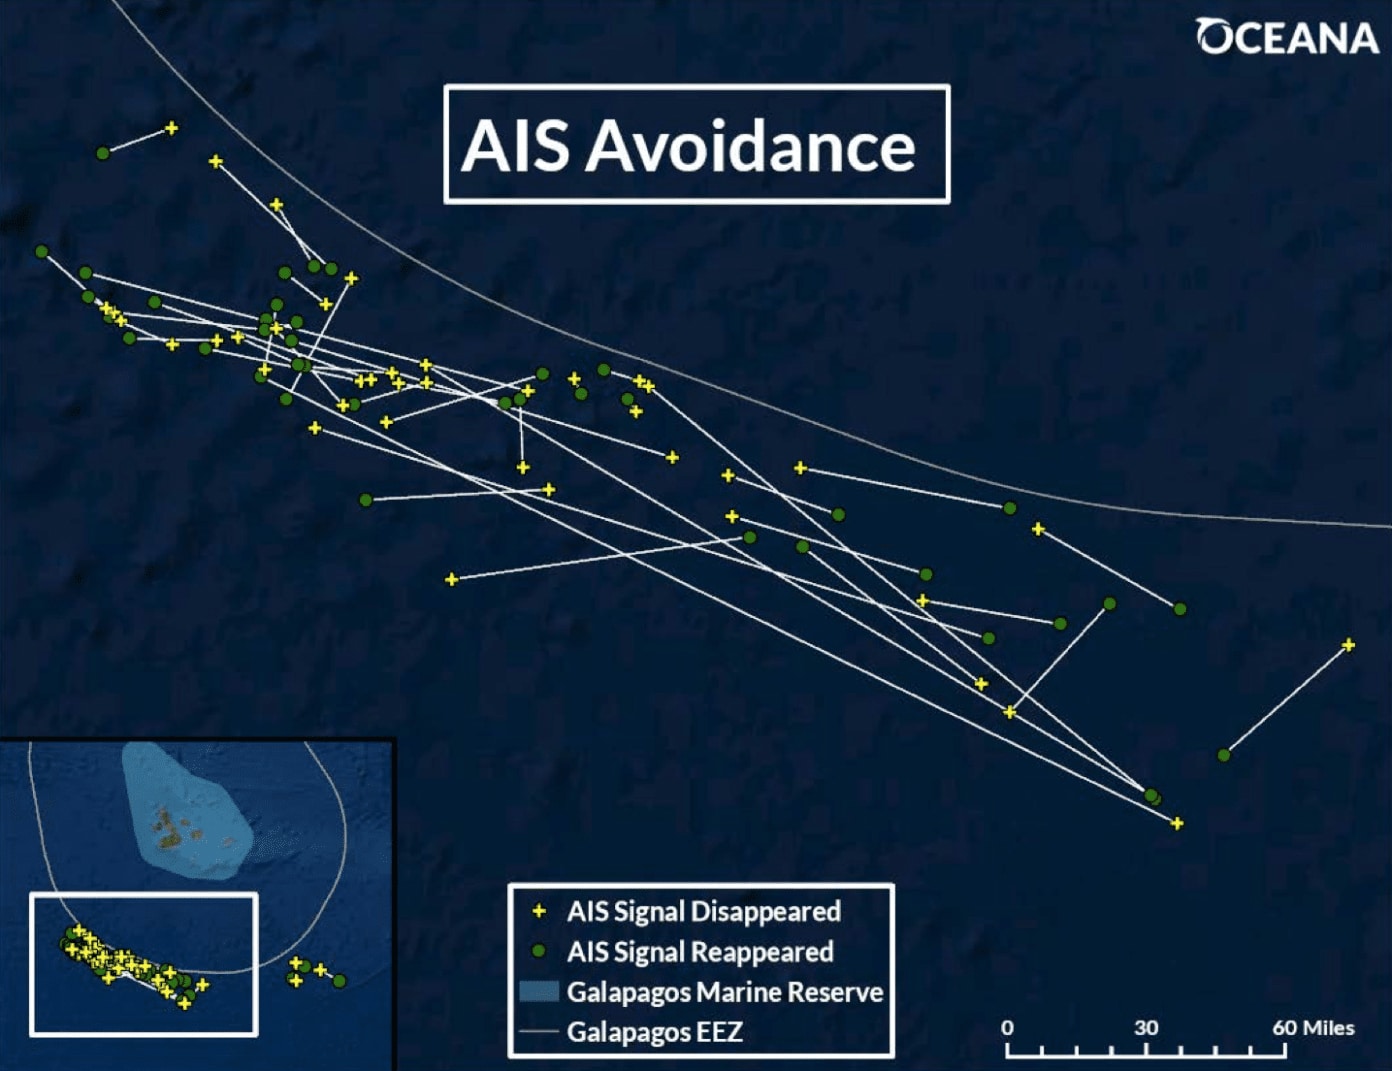 Grafika obrazująca sygnały AIS chińskiej floty rybackiej na wyspach galapagos